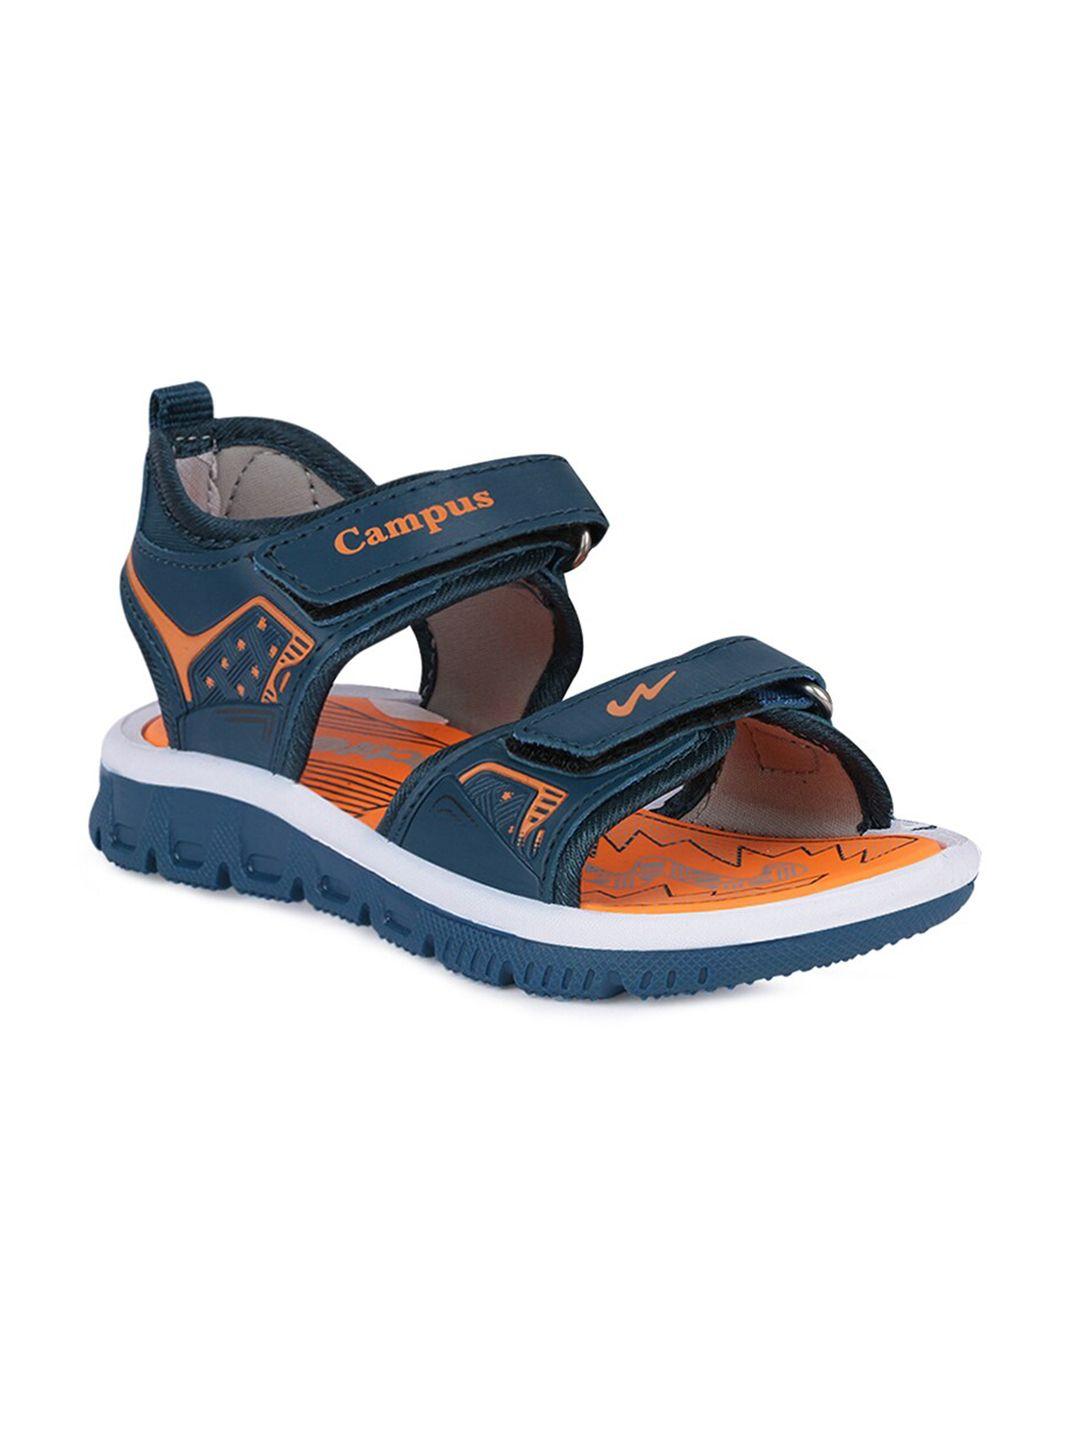 campus unisex kids blue & orange comfort sandals